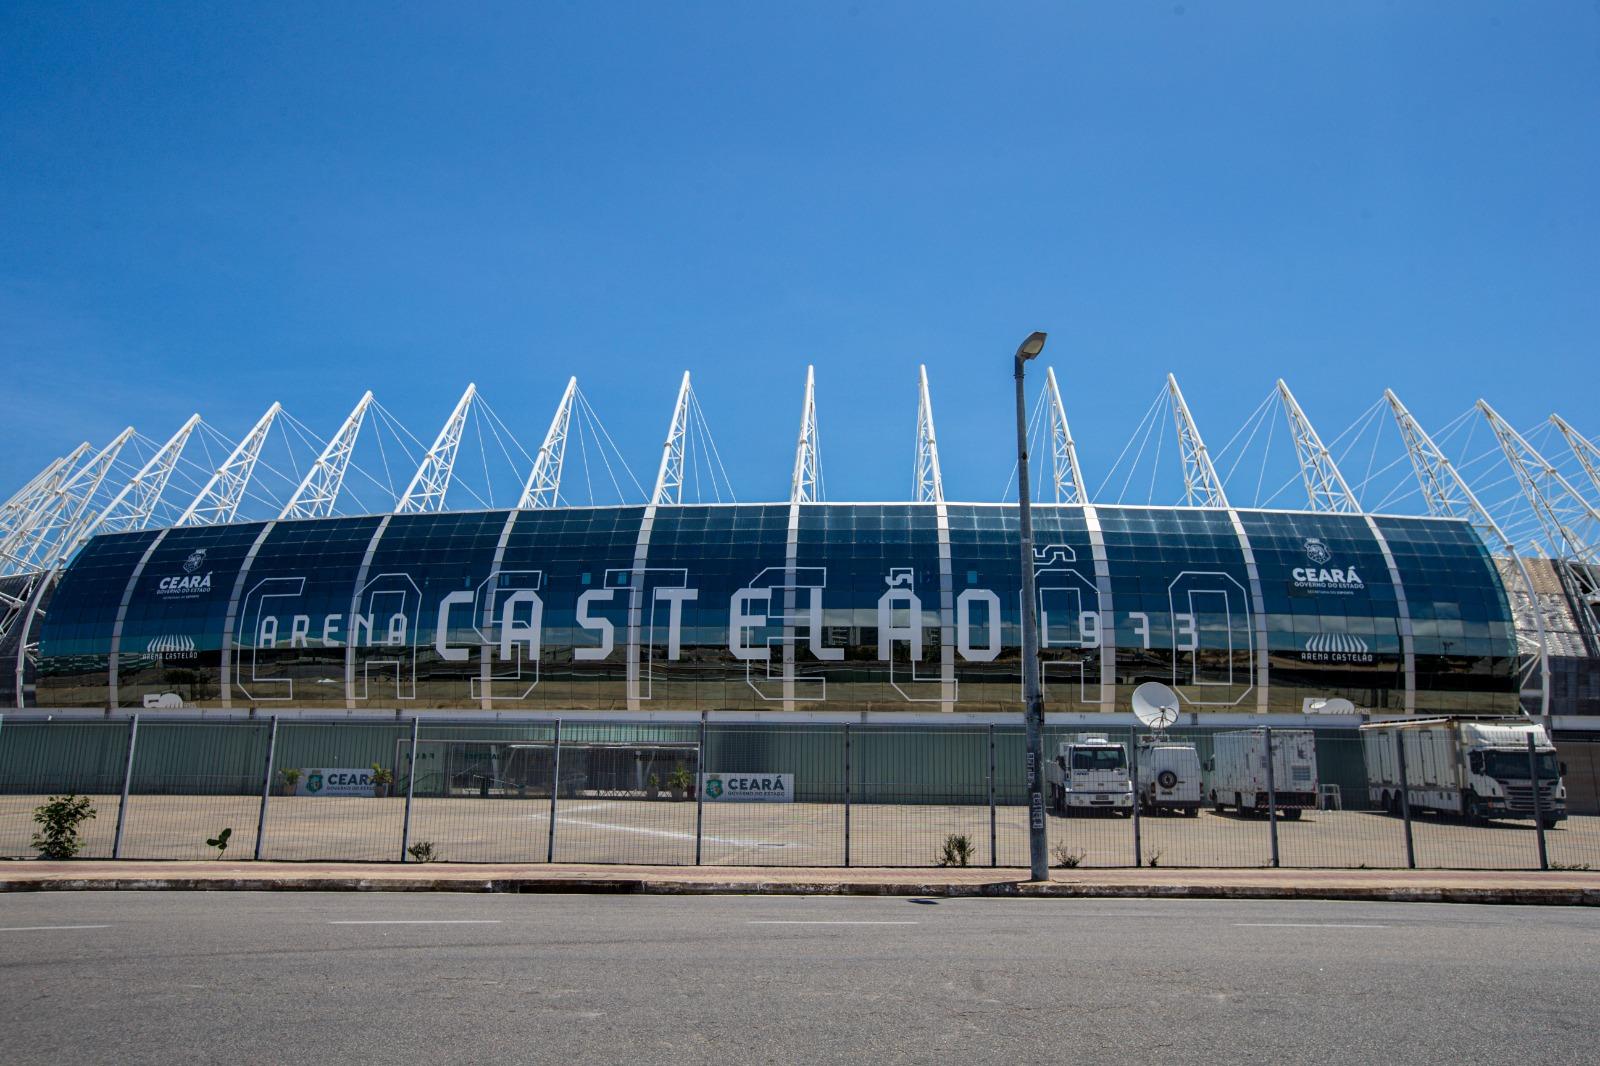 Arena Castelão, estádio em Fortaleza (CE)